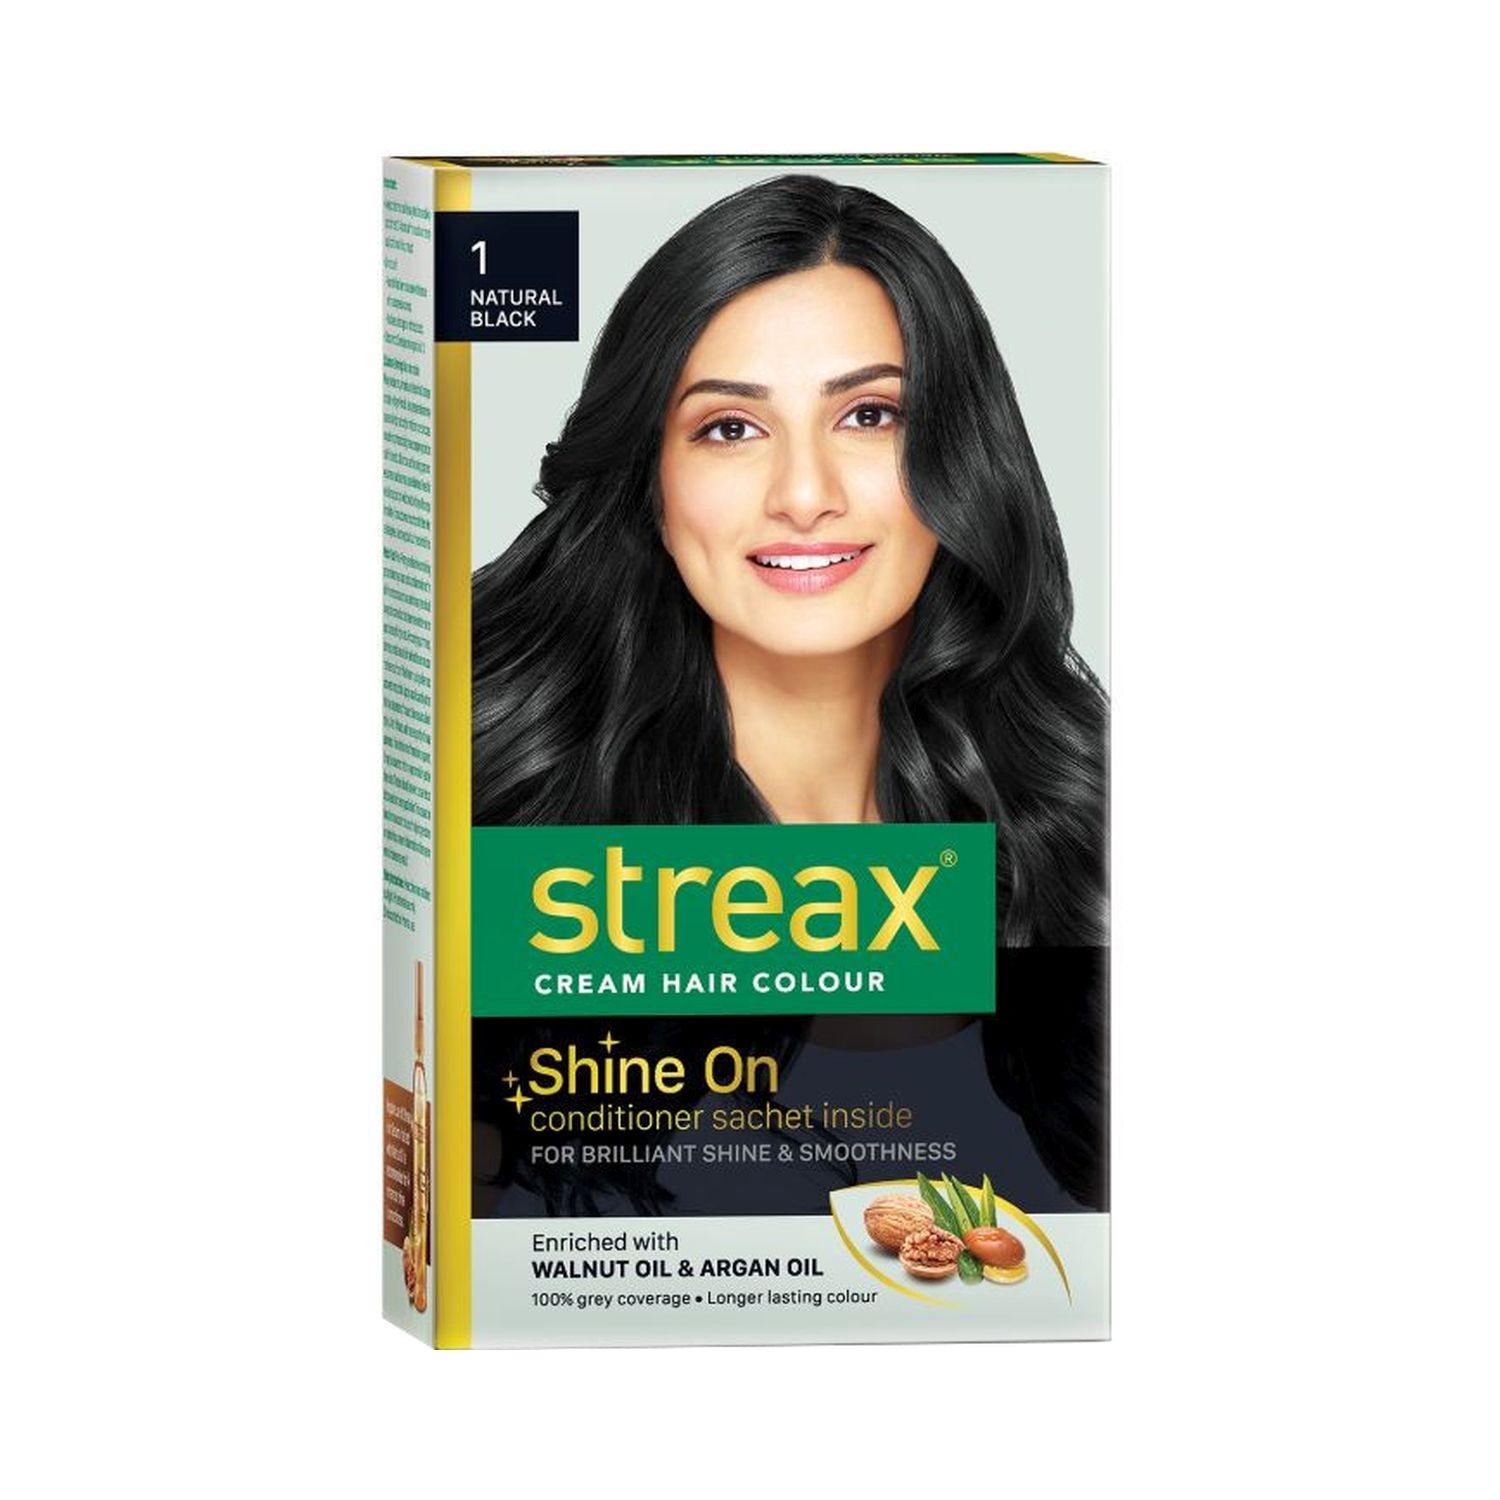 streax hair colour - 1 natural black (70gm+50ml)